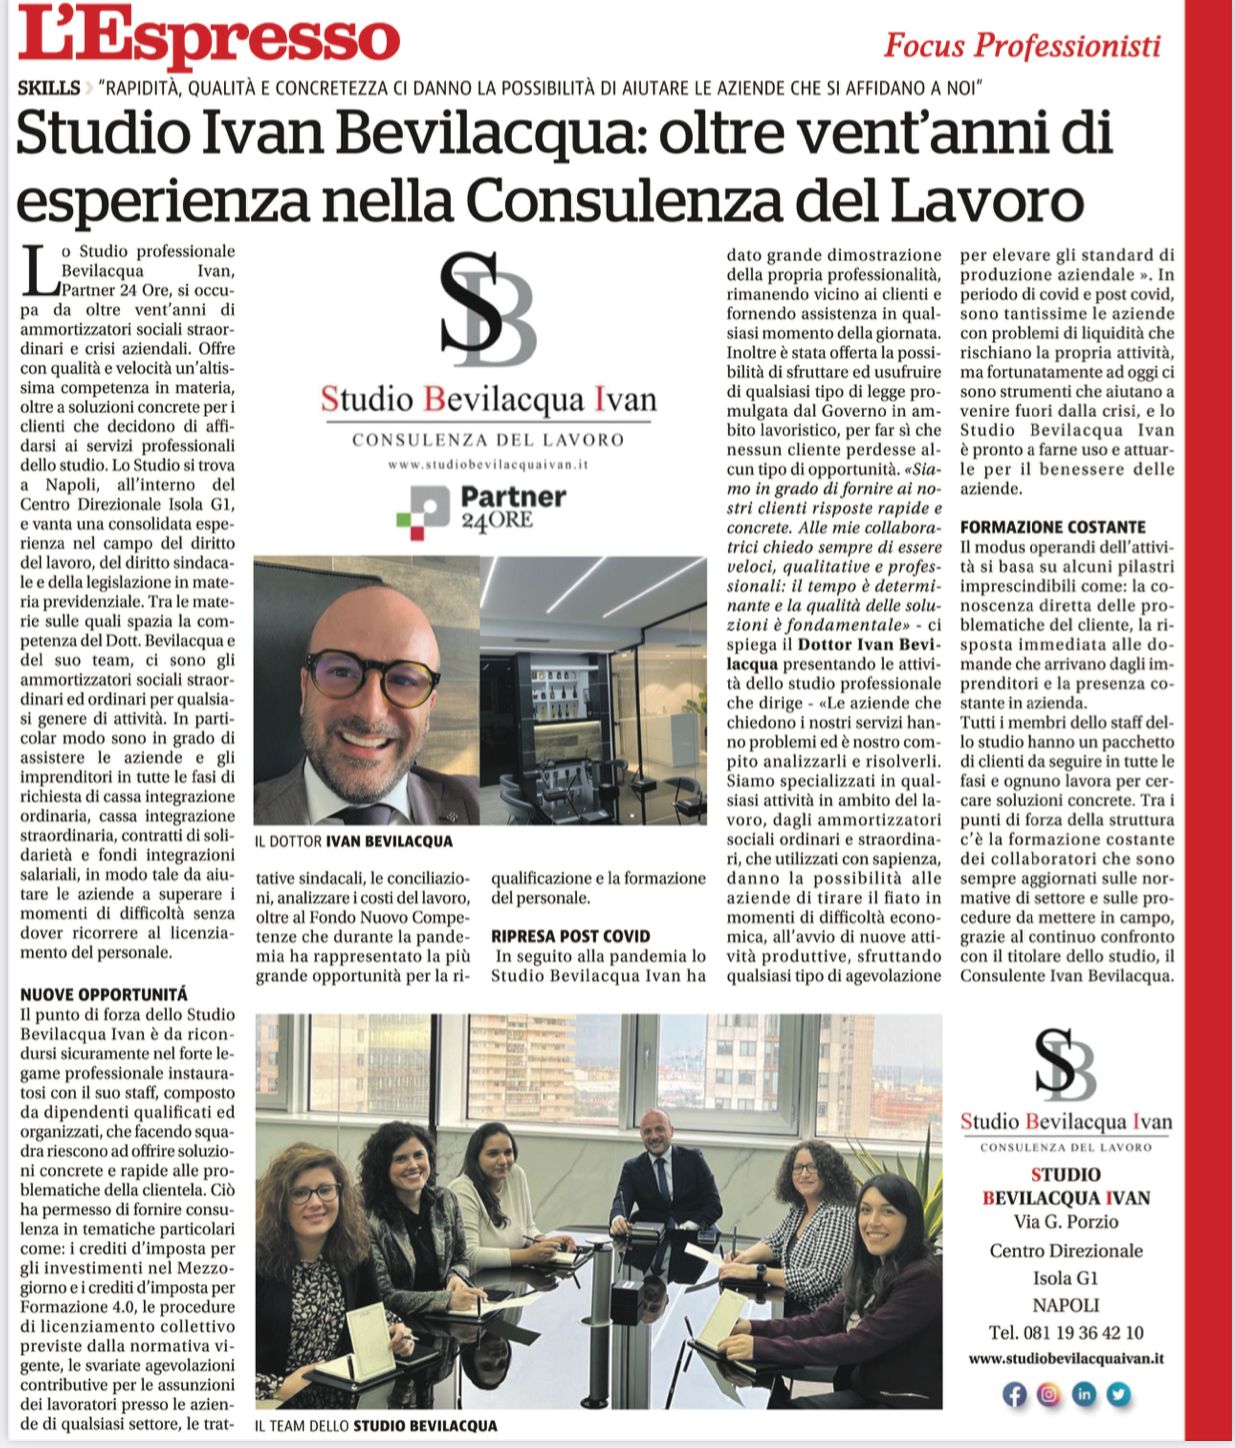 Studio Ivan Bevilacqua: Oltre vent’anni di esperienza nella Consulenza del Lavoro Oggi sull’Espresso!